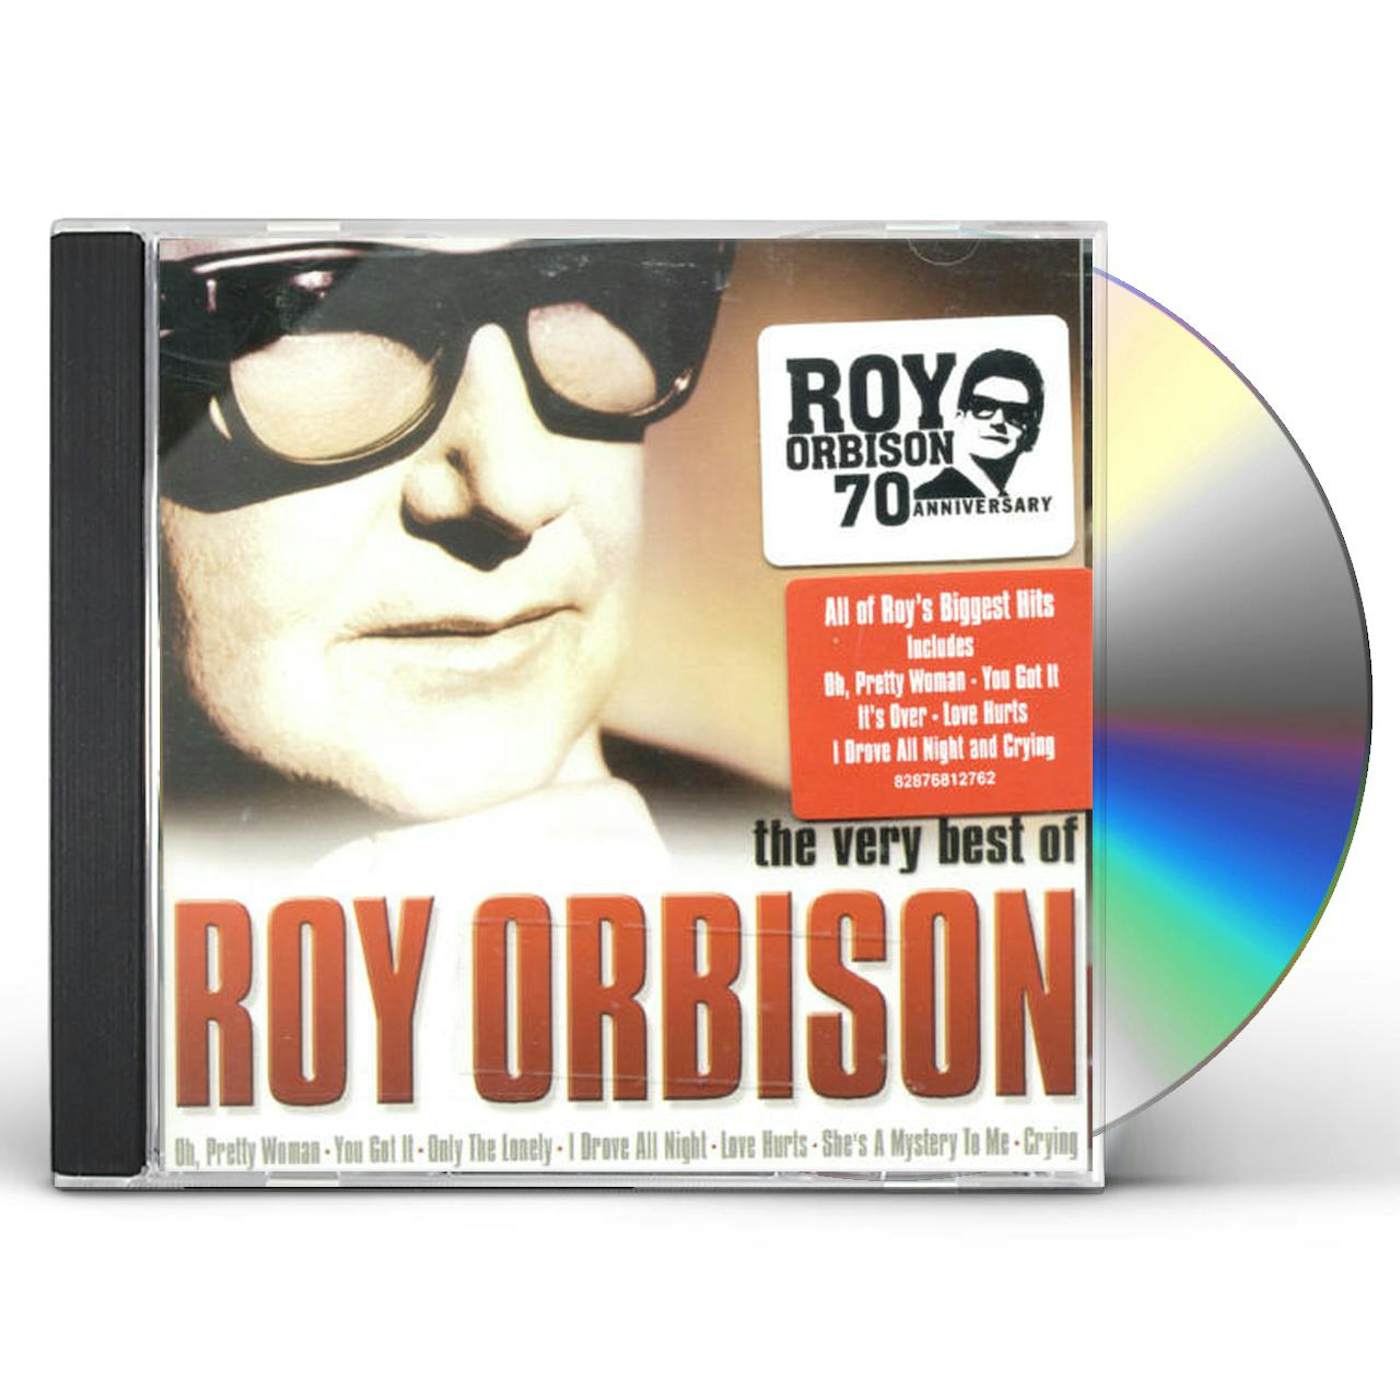 VERY BEST OF ROY ORBISON CD